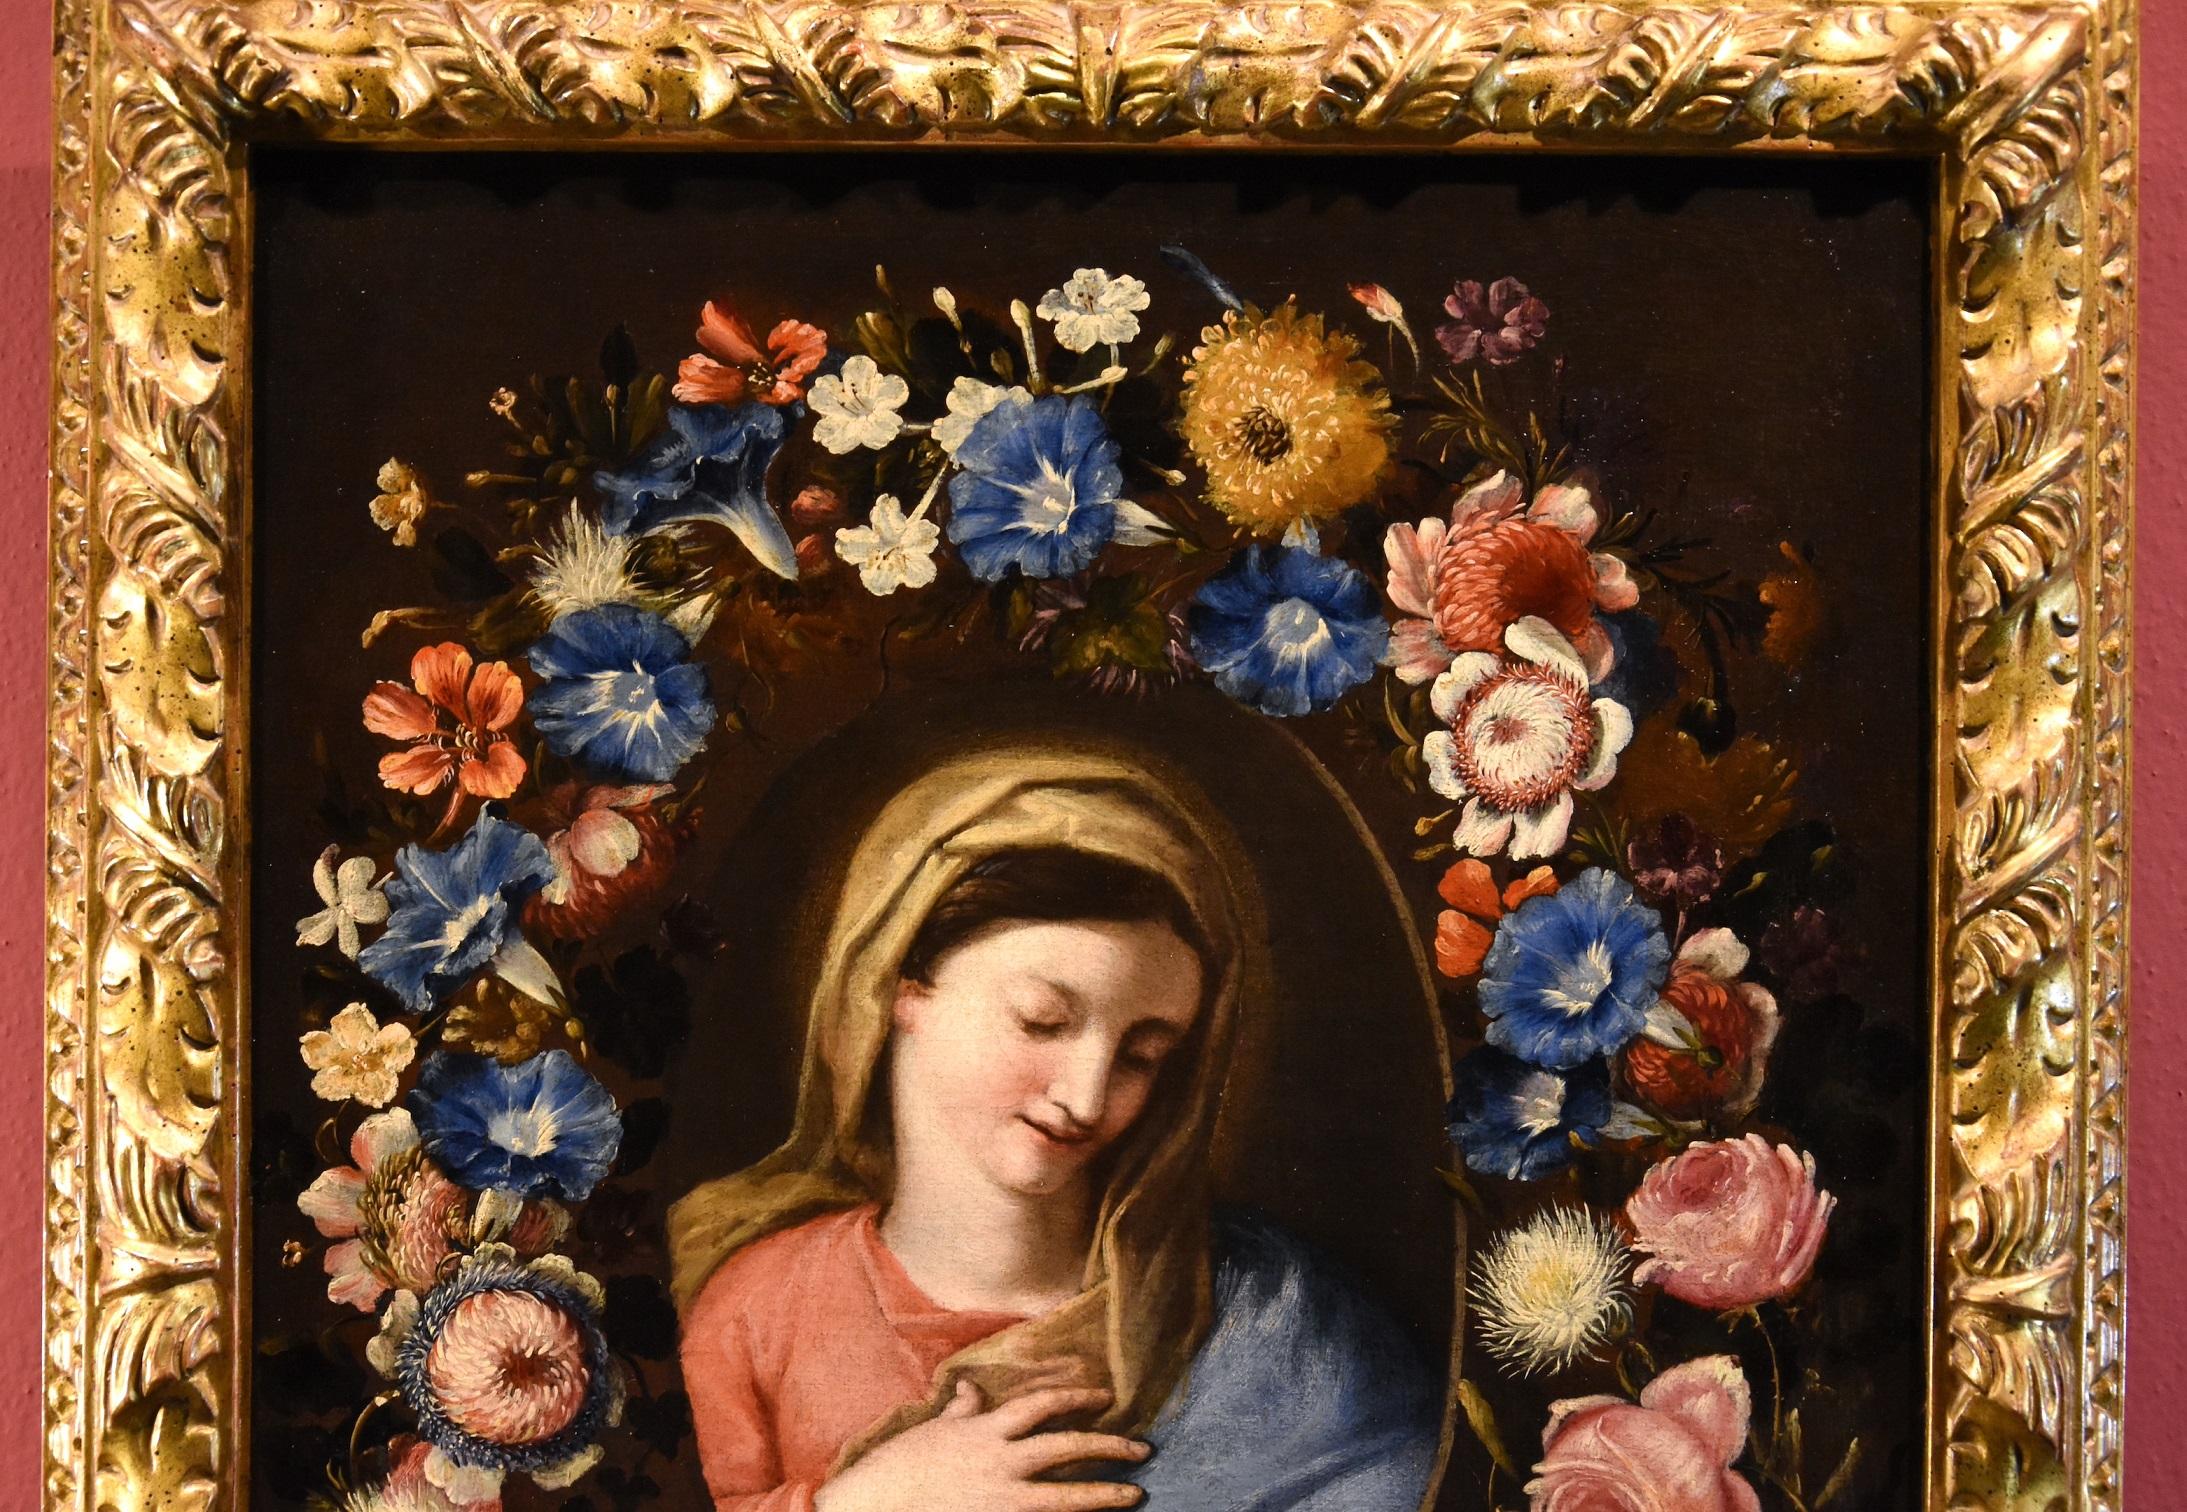 Guirlande de fleurs avec un portrait de la Vierge
Francesco Trevisani (Capodistria 1656 - Rome 1746) et Niccolò Stanchi (Rome 1623 - 1690), attribuables

Huile sur toile
66 x 49 cm. - Dans un cadre 76 X 60 cm.

Le magnifique tableau que nous avons